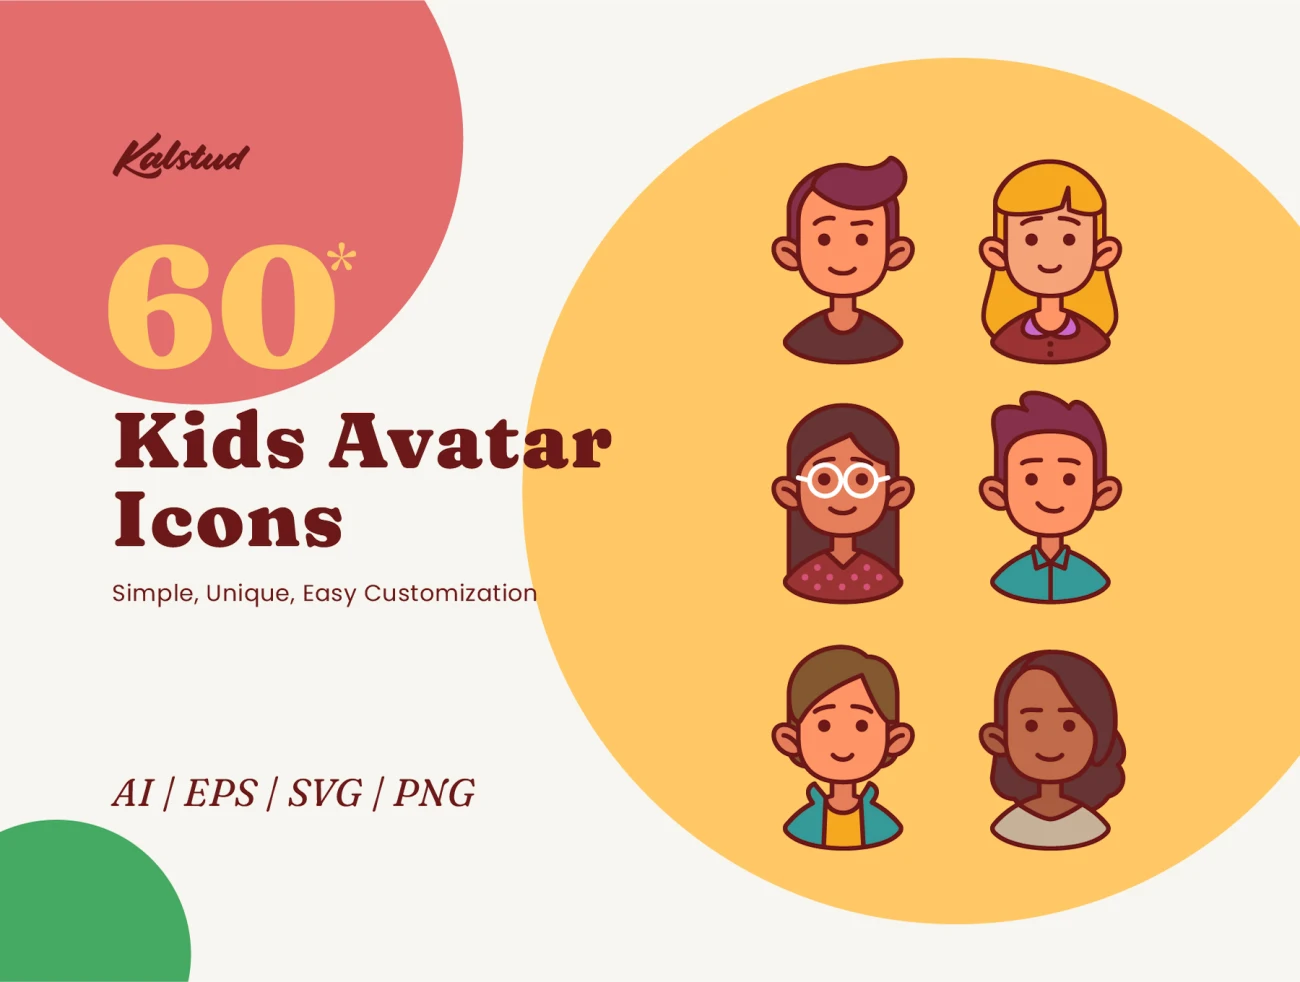 60款卡通矢量儿童头像图标素材 60 Kids Avatar Icons-3D/图标、人物插画、插画-到位啦UI